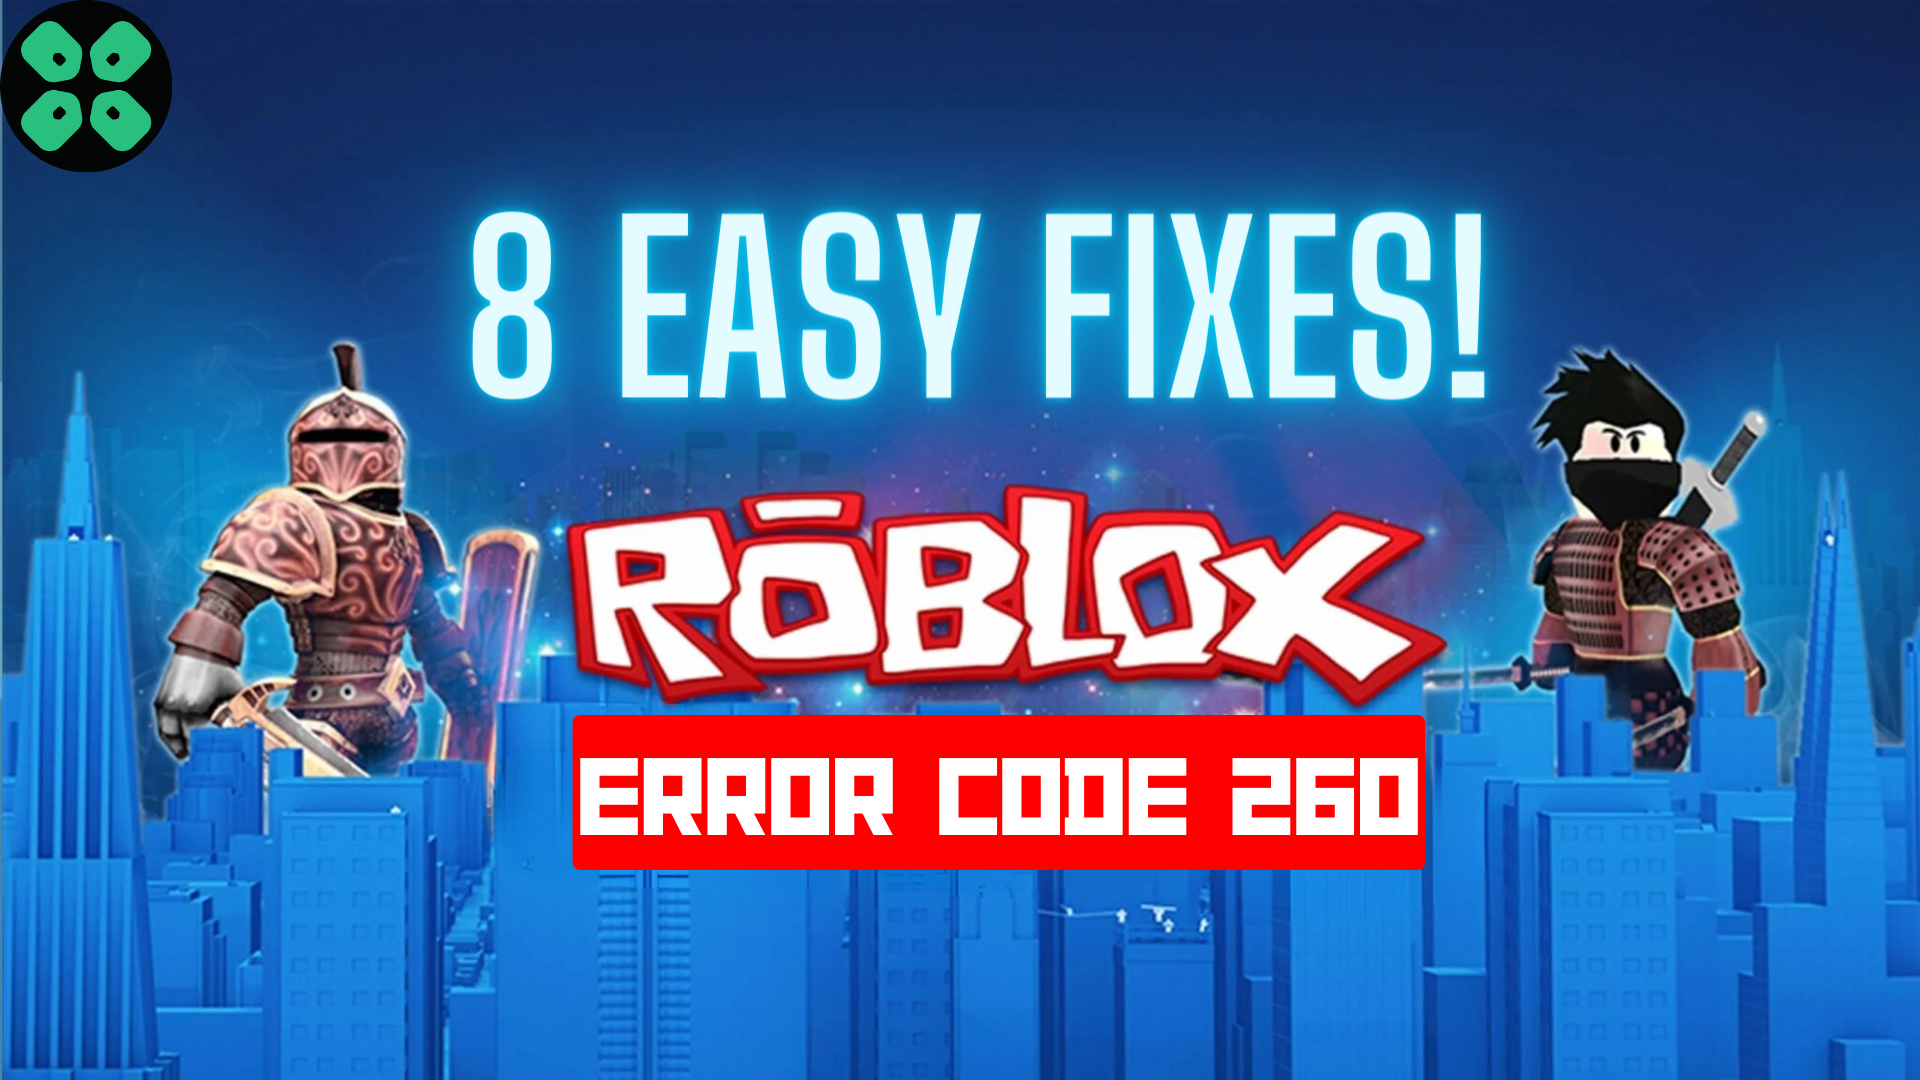 How to Fix Roblox Error Code 260